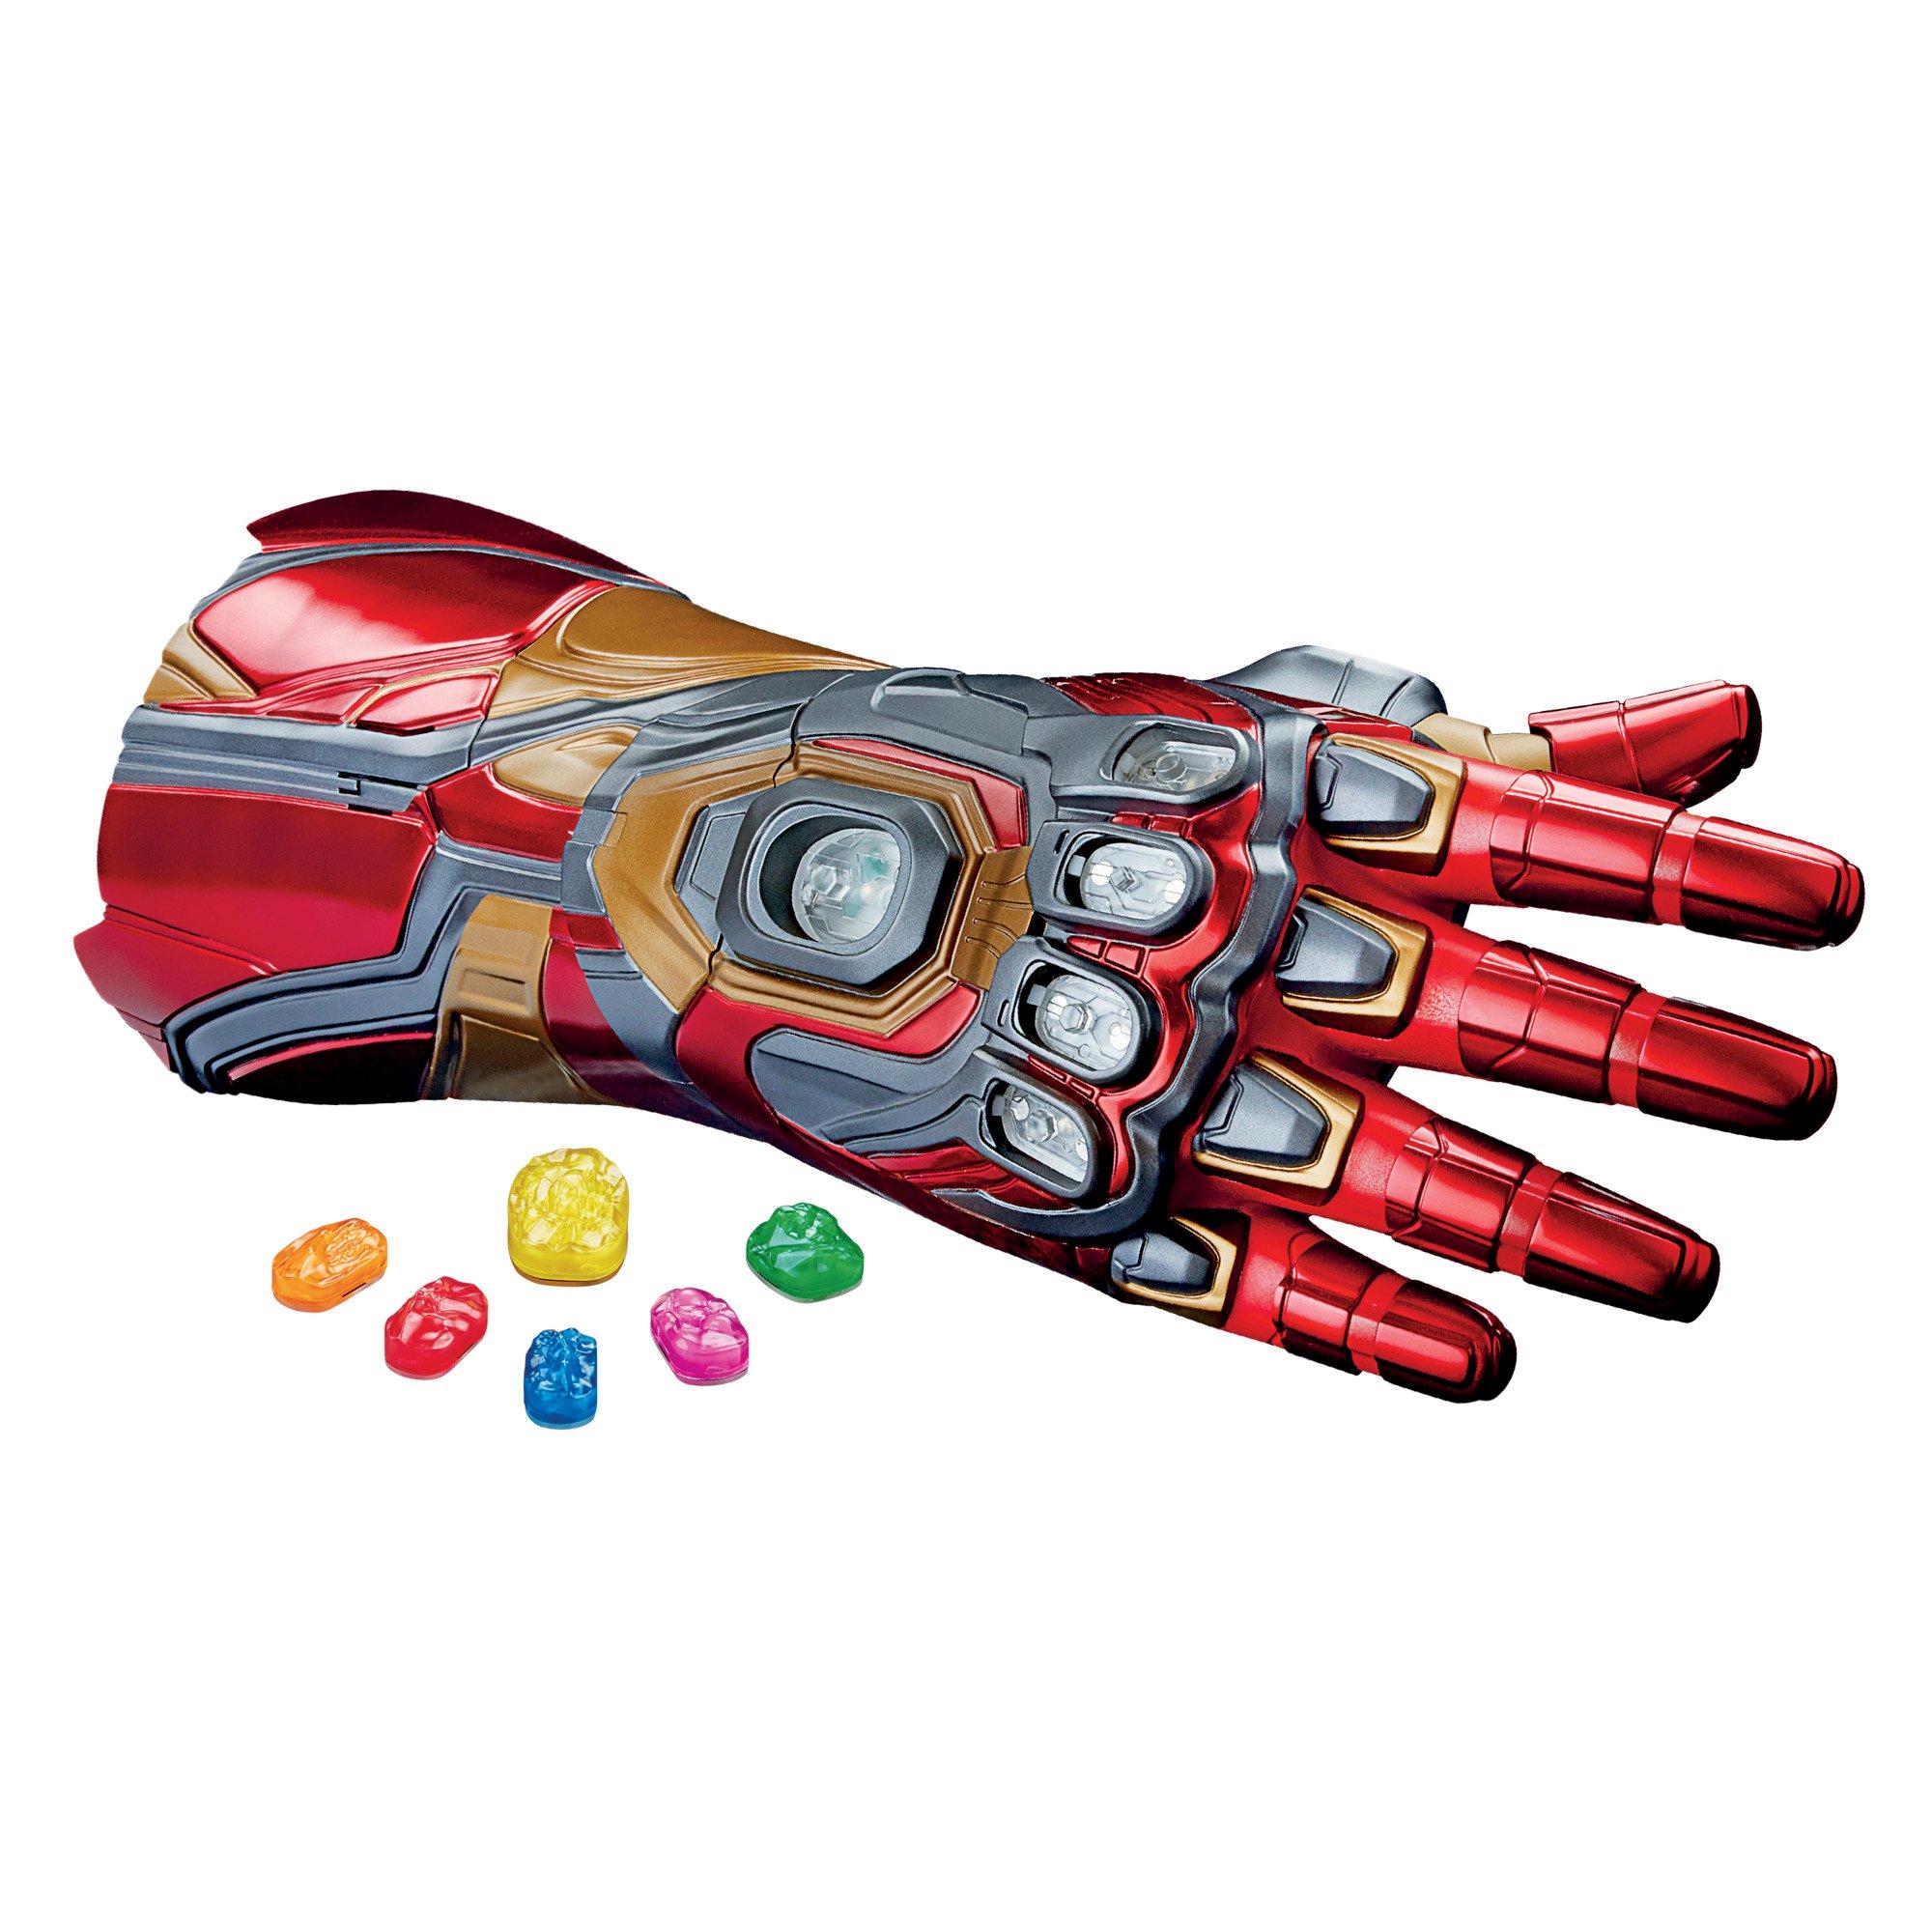 Iron Man Infinity War Gauntlet Gloves Marvel Avengers 4 Endgame w/LED Light 